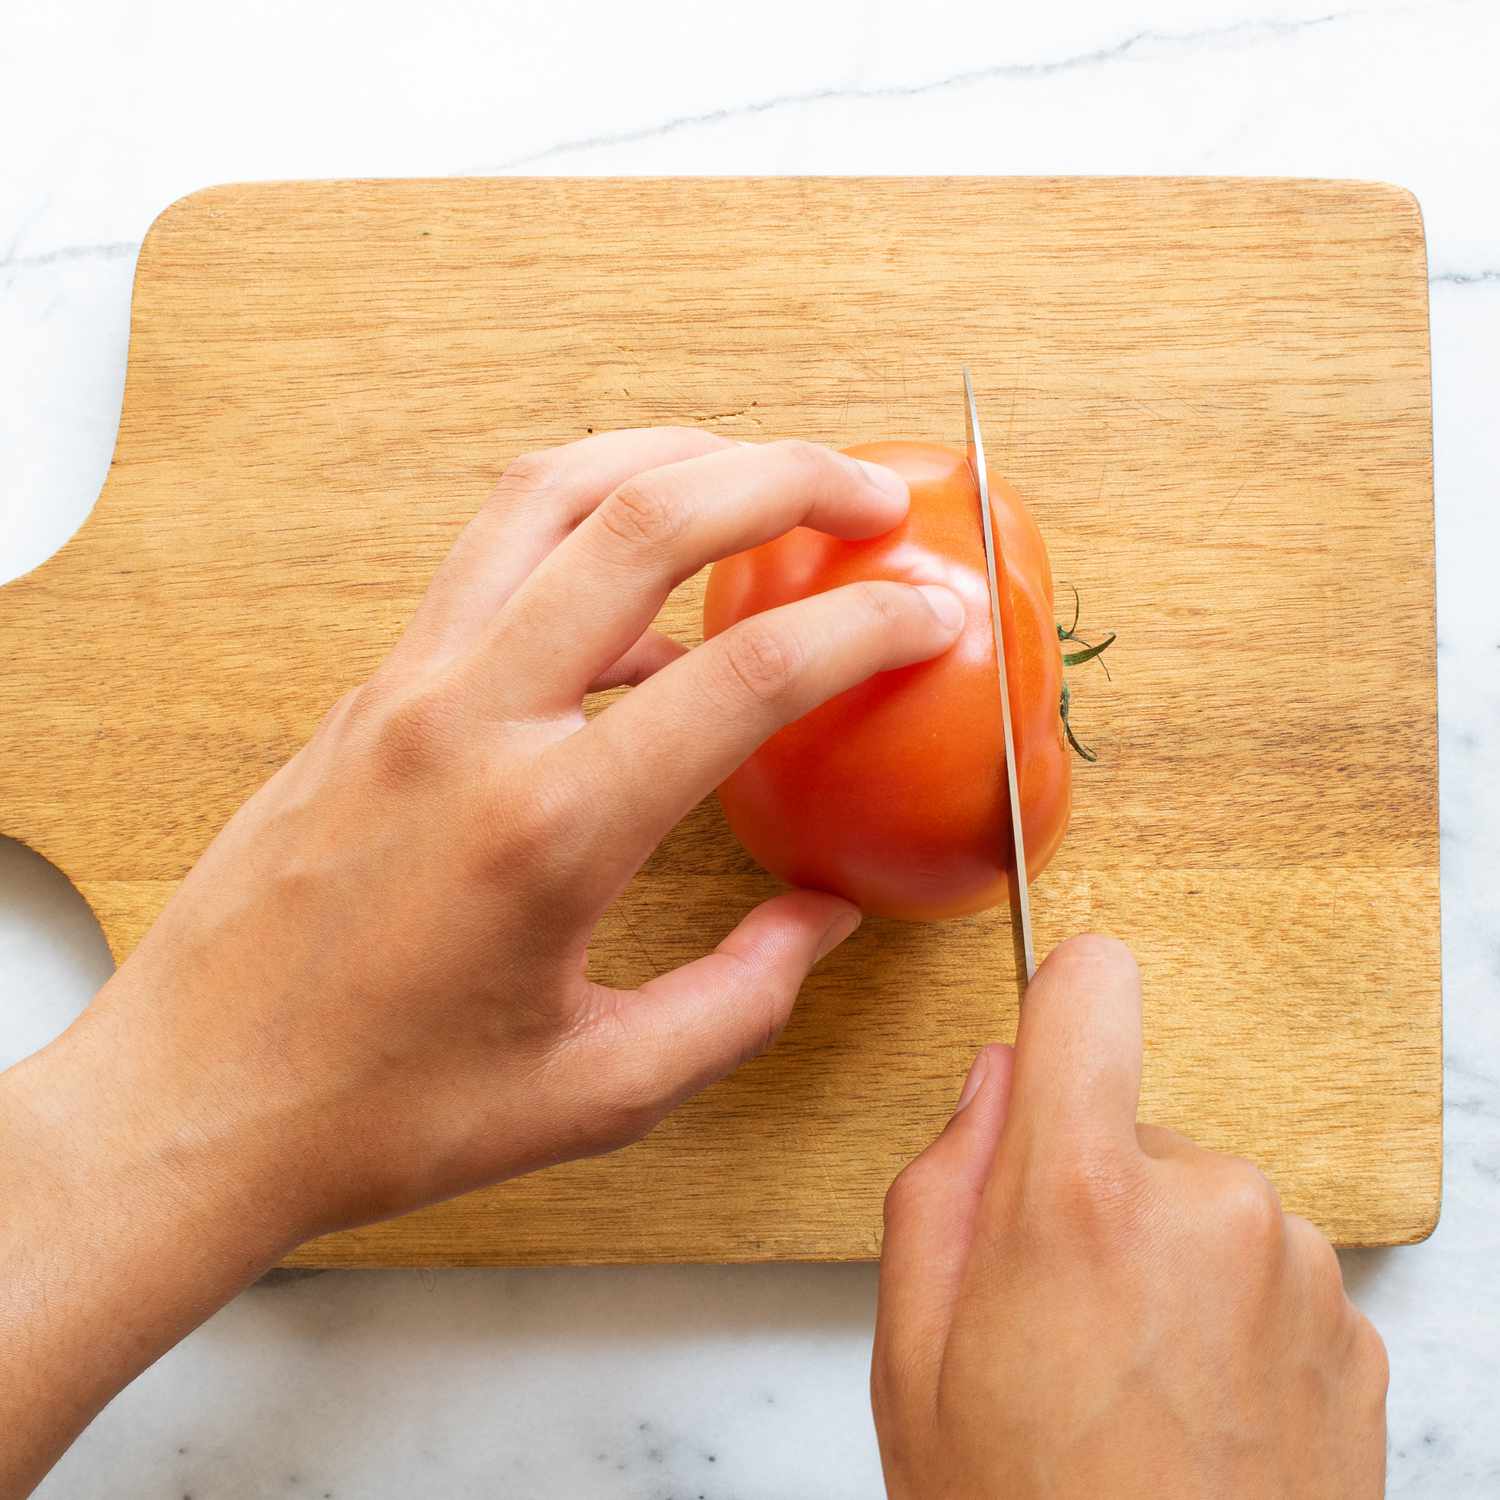 Mano usando un cuchillo para cortar tomates en una tabla de cortar de madera